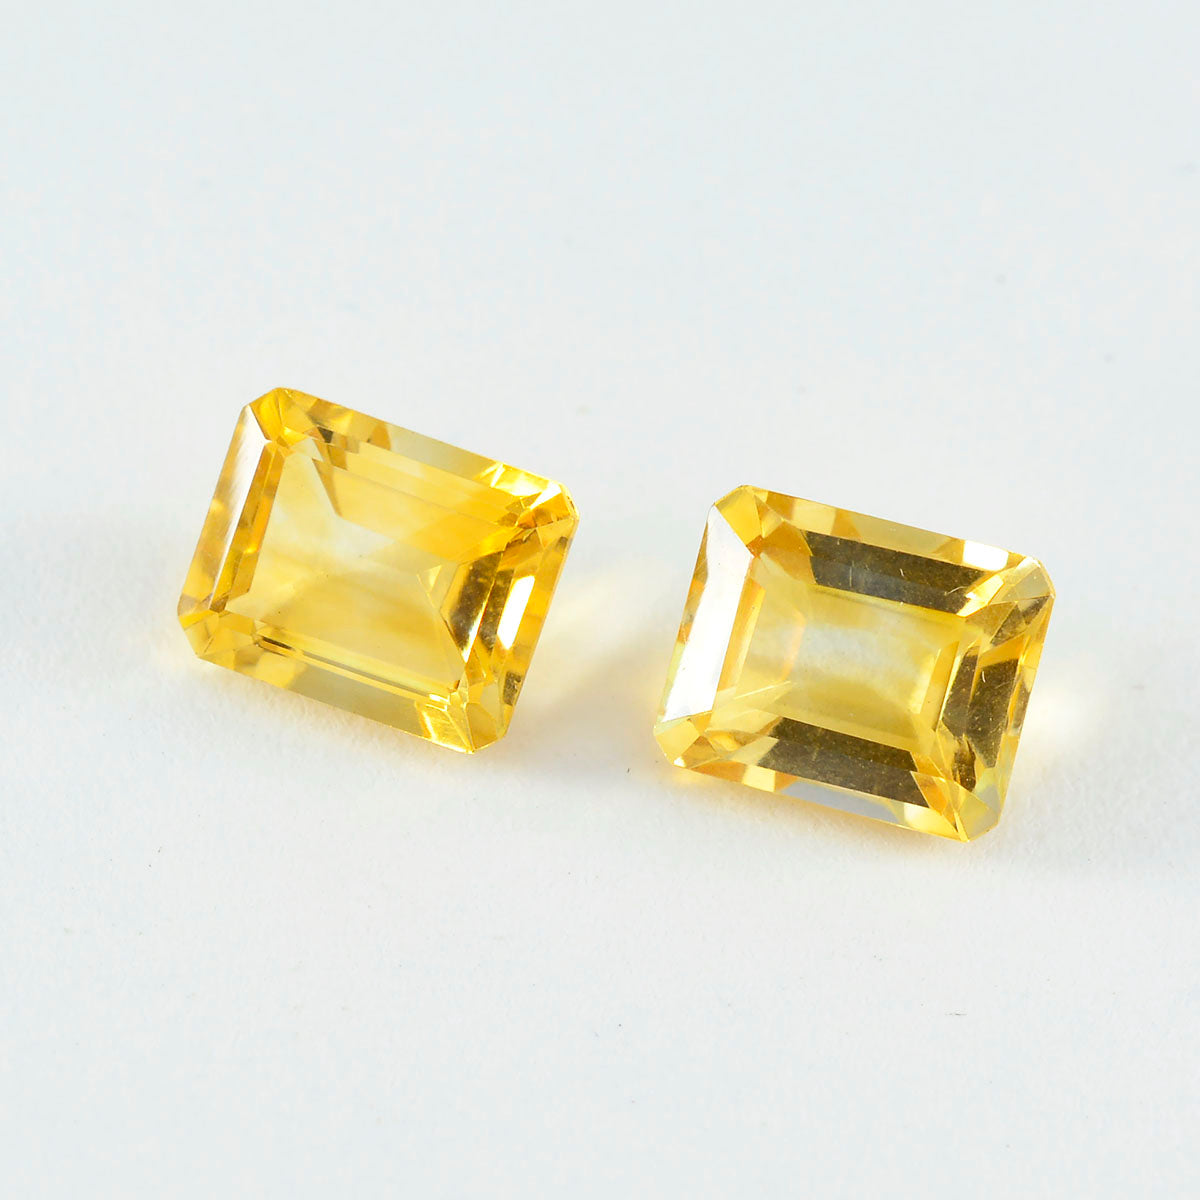 Riyogems, 1 unidad, citrino amarillo auténtico facetado, 12x16mm, forma octagonal, gema suelta de calidad fantástica